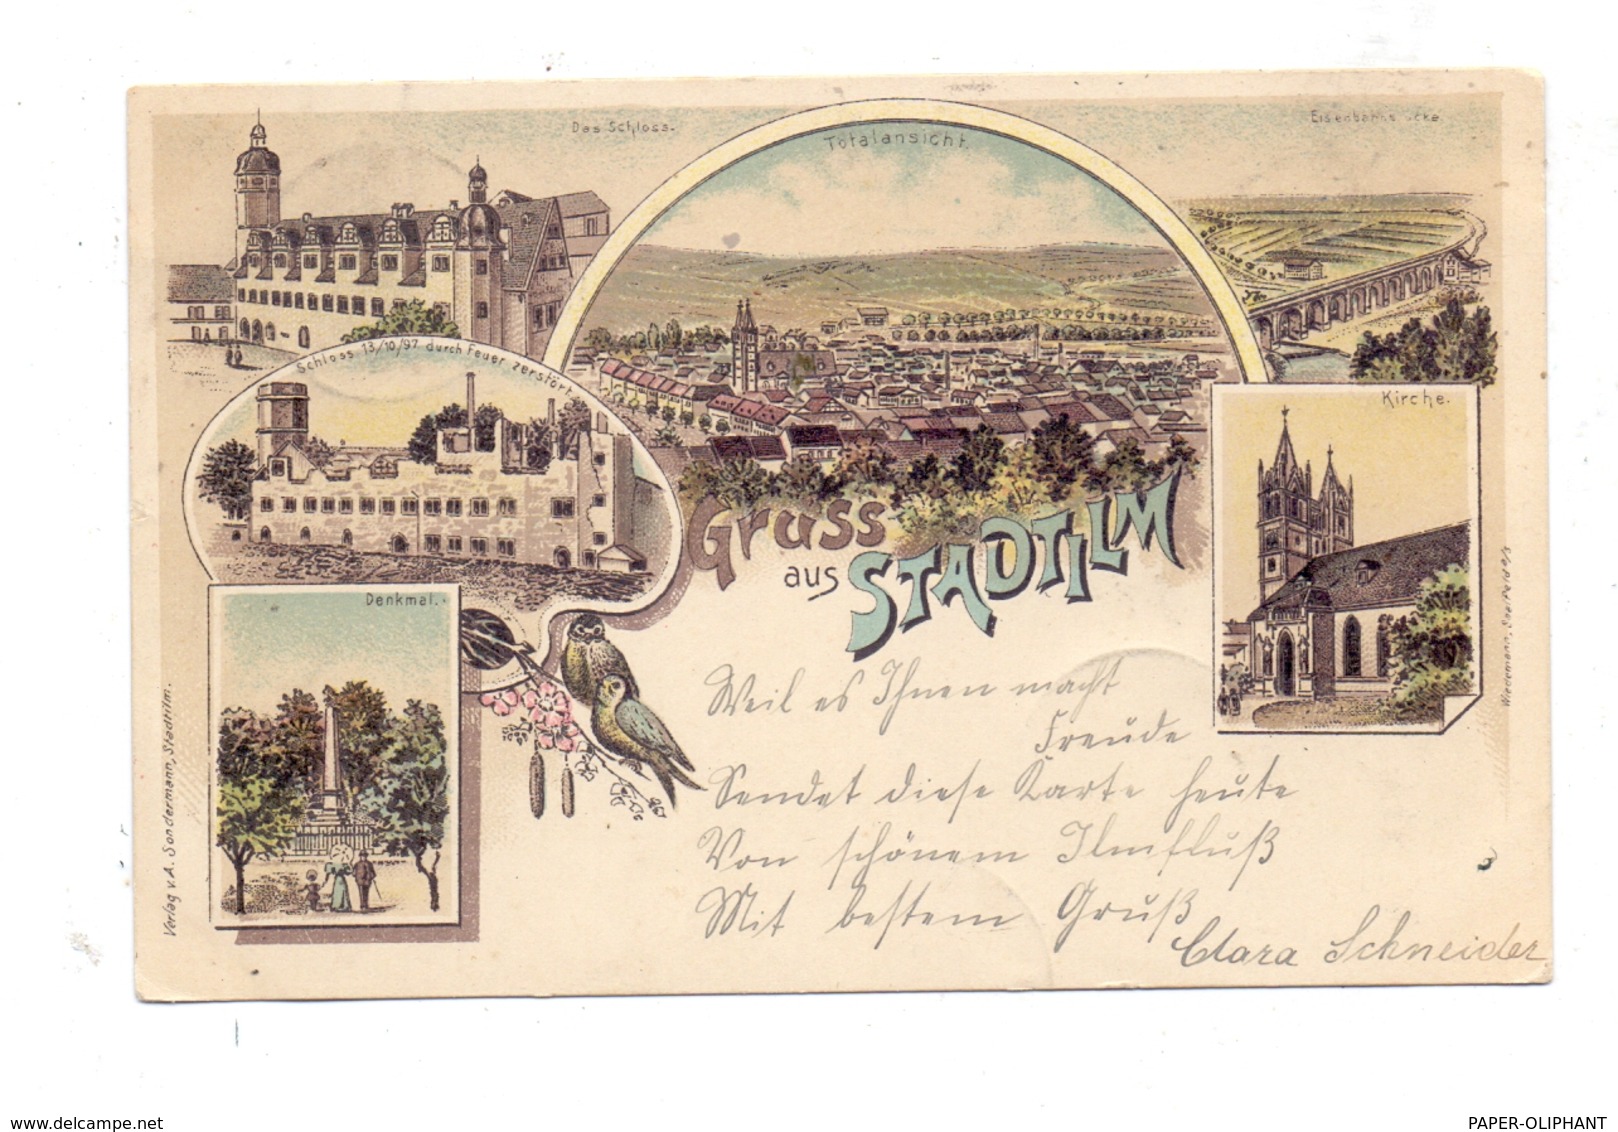 0-5217 STADTILM, Lithographie 1899, Eisenbahnbrücke, Kirche, Denkmal, Schloss, Totalansicht - Stadtilm